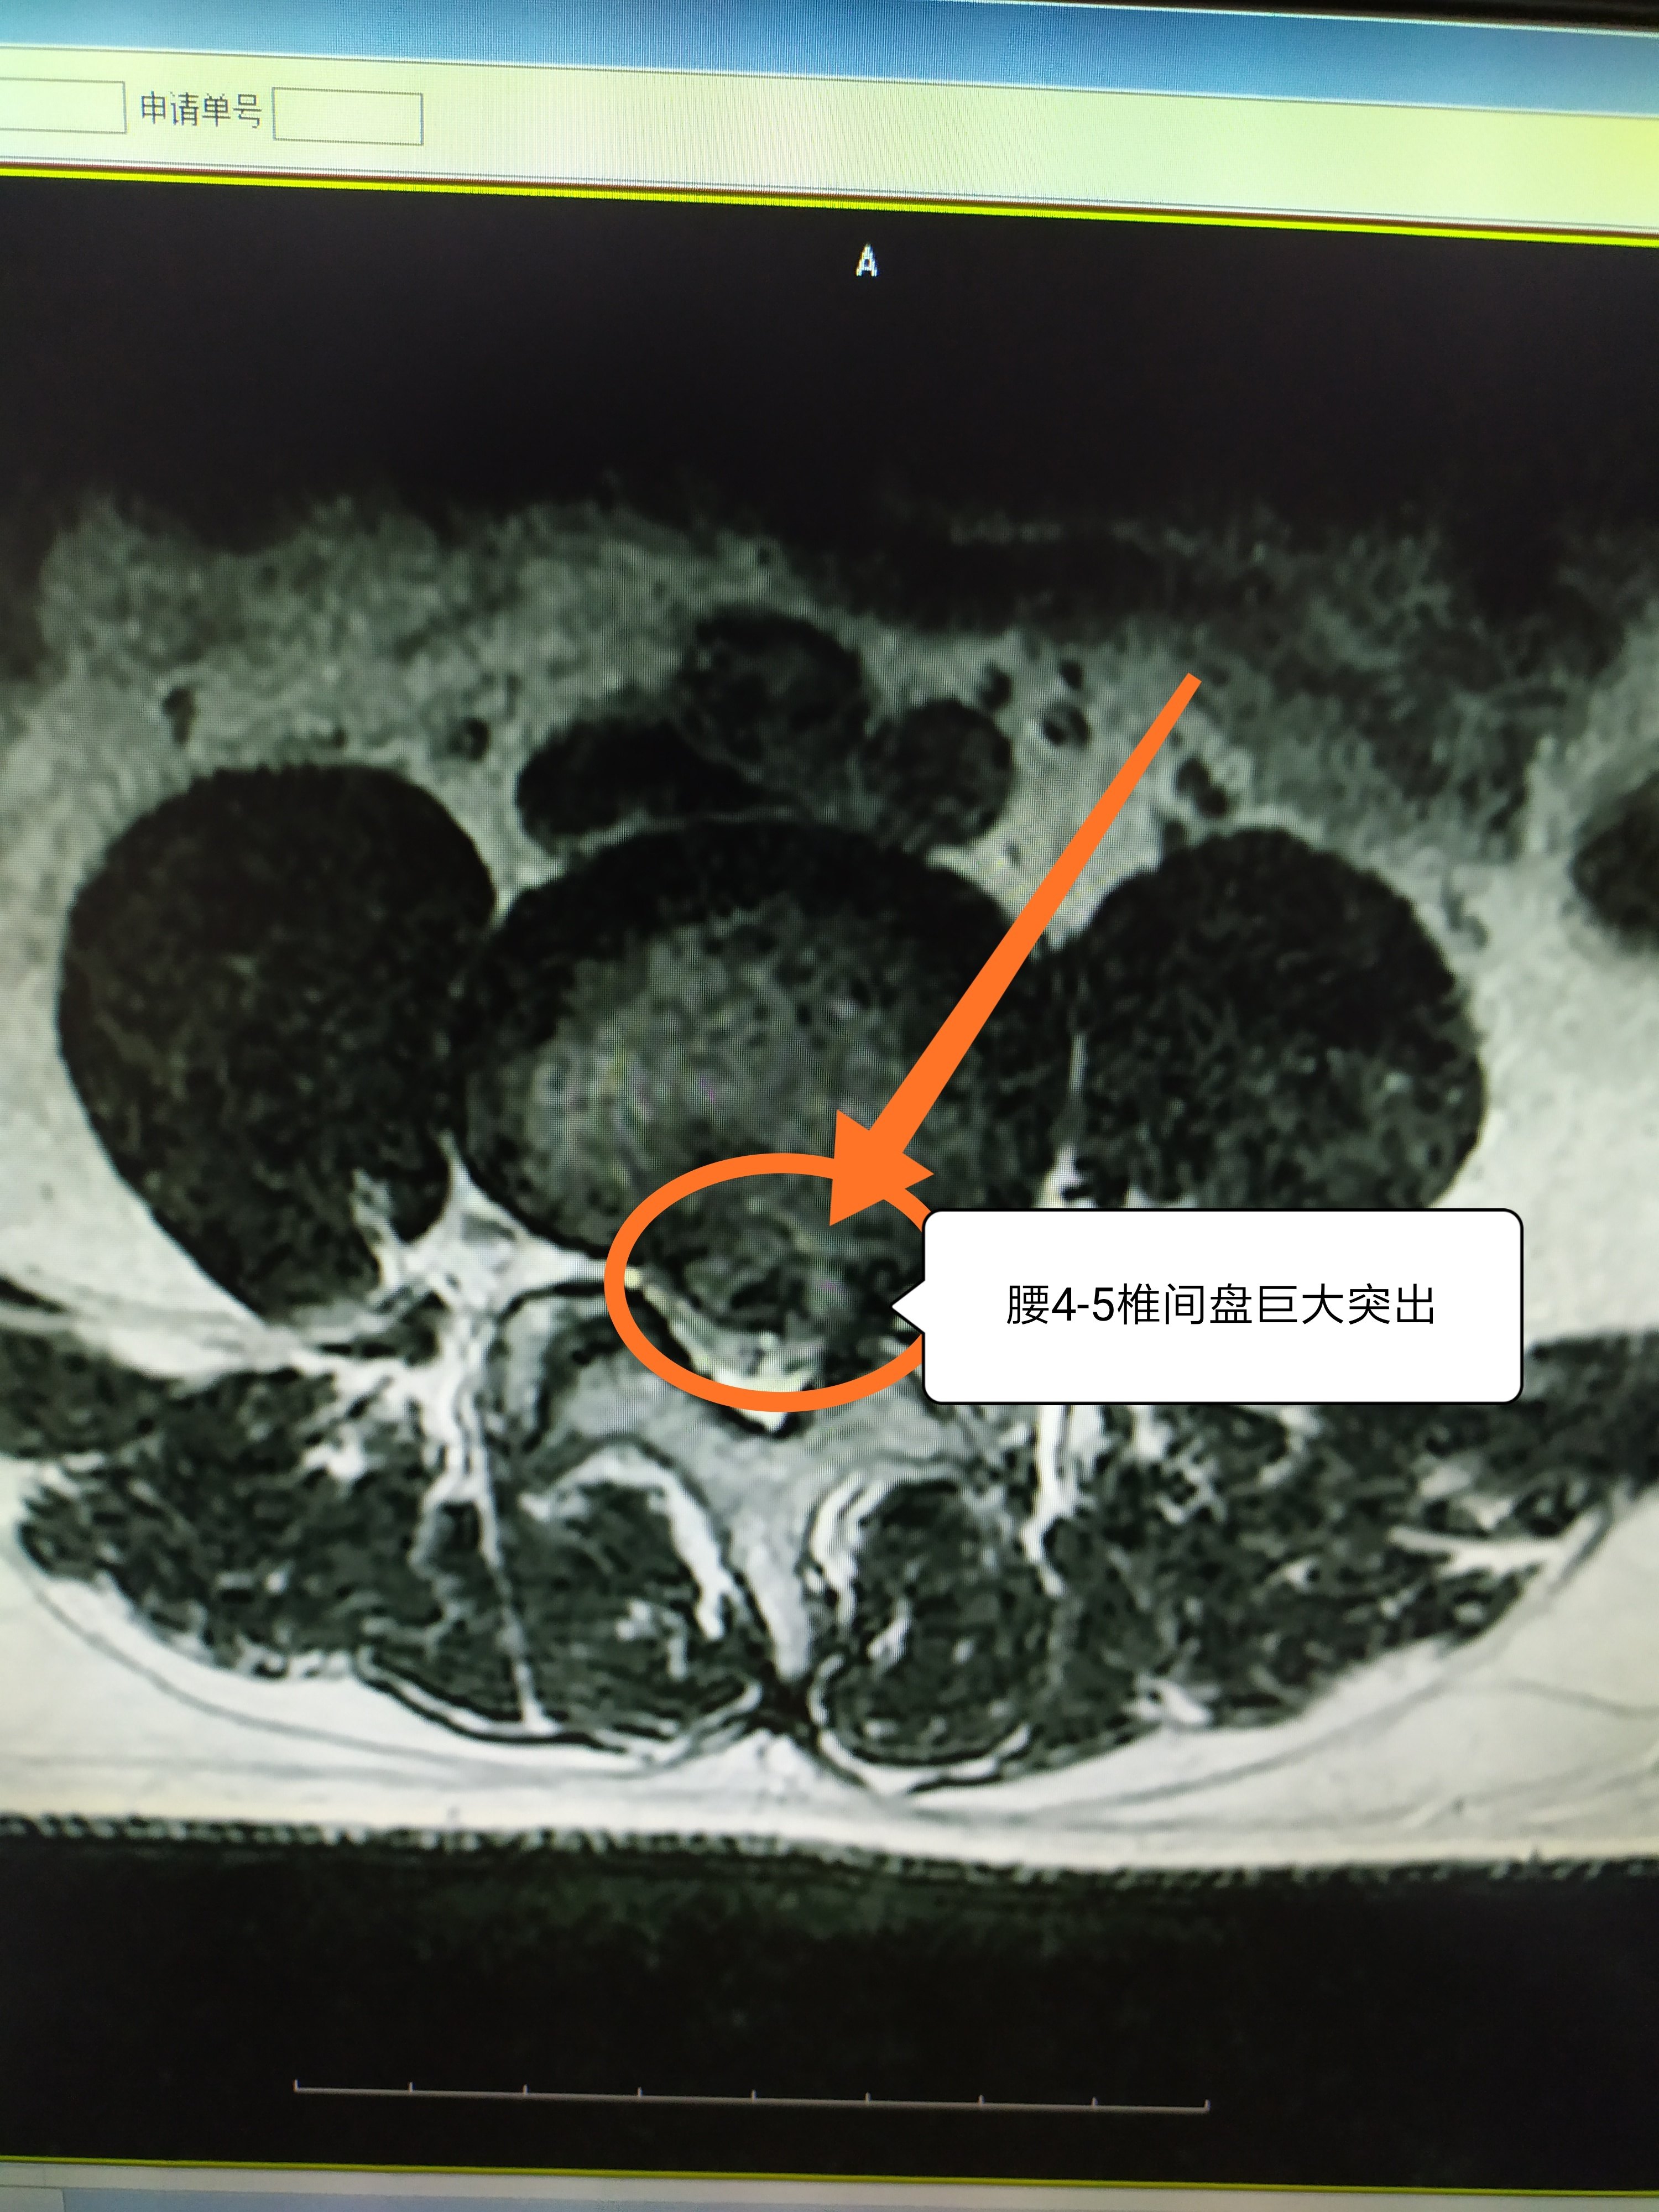 李明(化名),男,28岁,因为体检查腰椎ct或核磁(mri)发现腰椎间盘突出